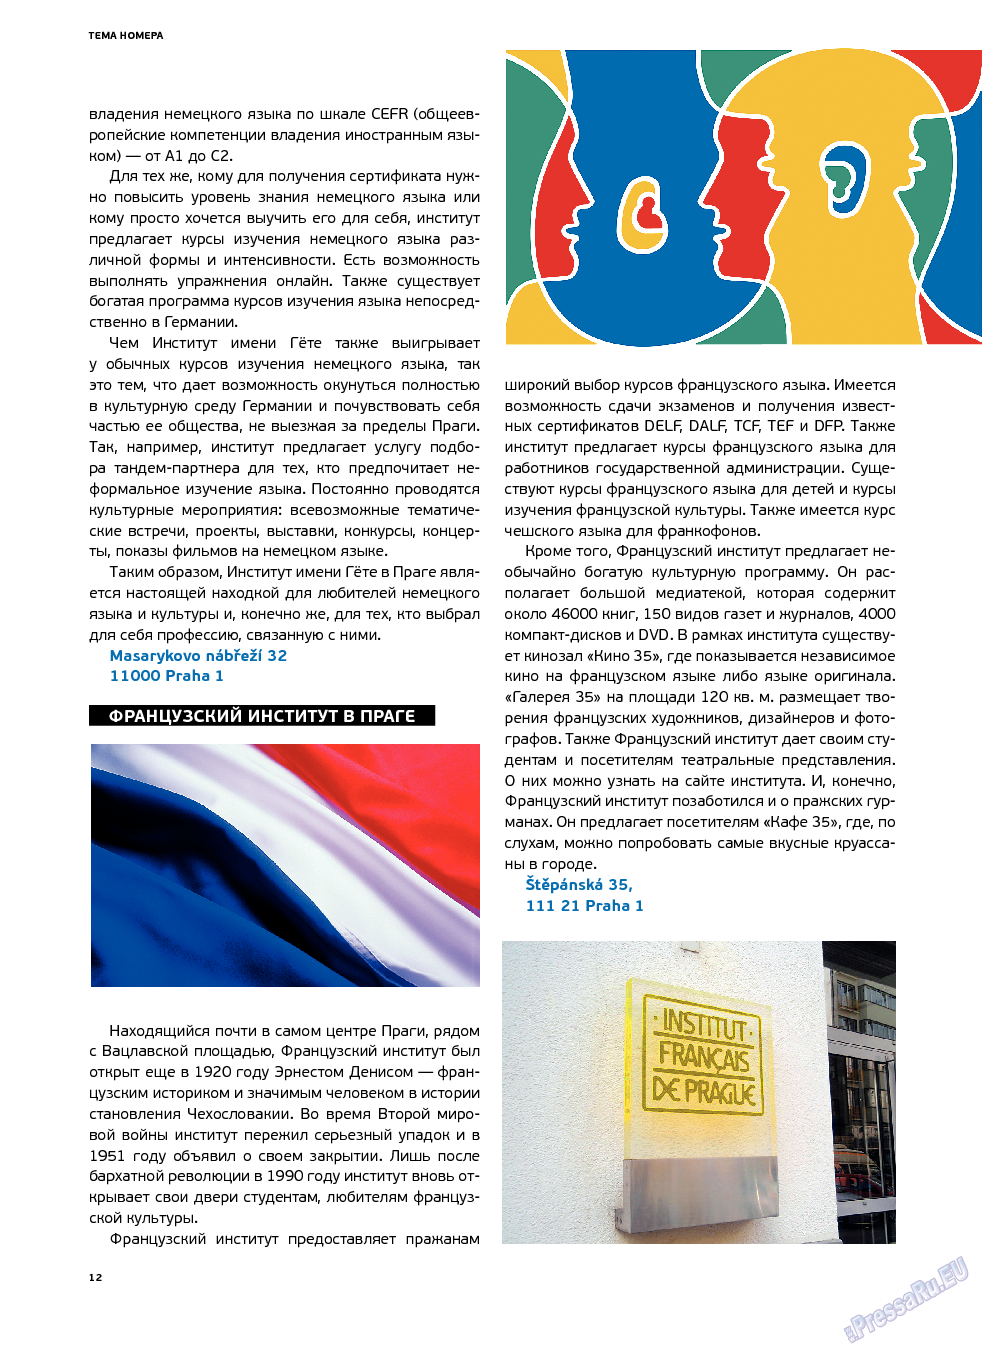 Артек, журнал. 2013 №3 стр.14